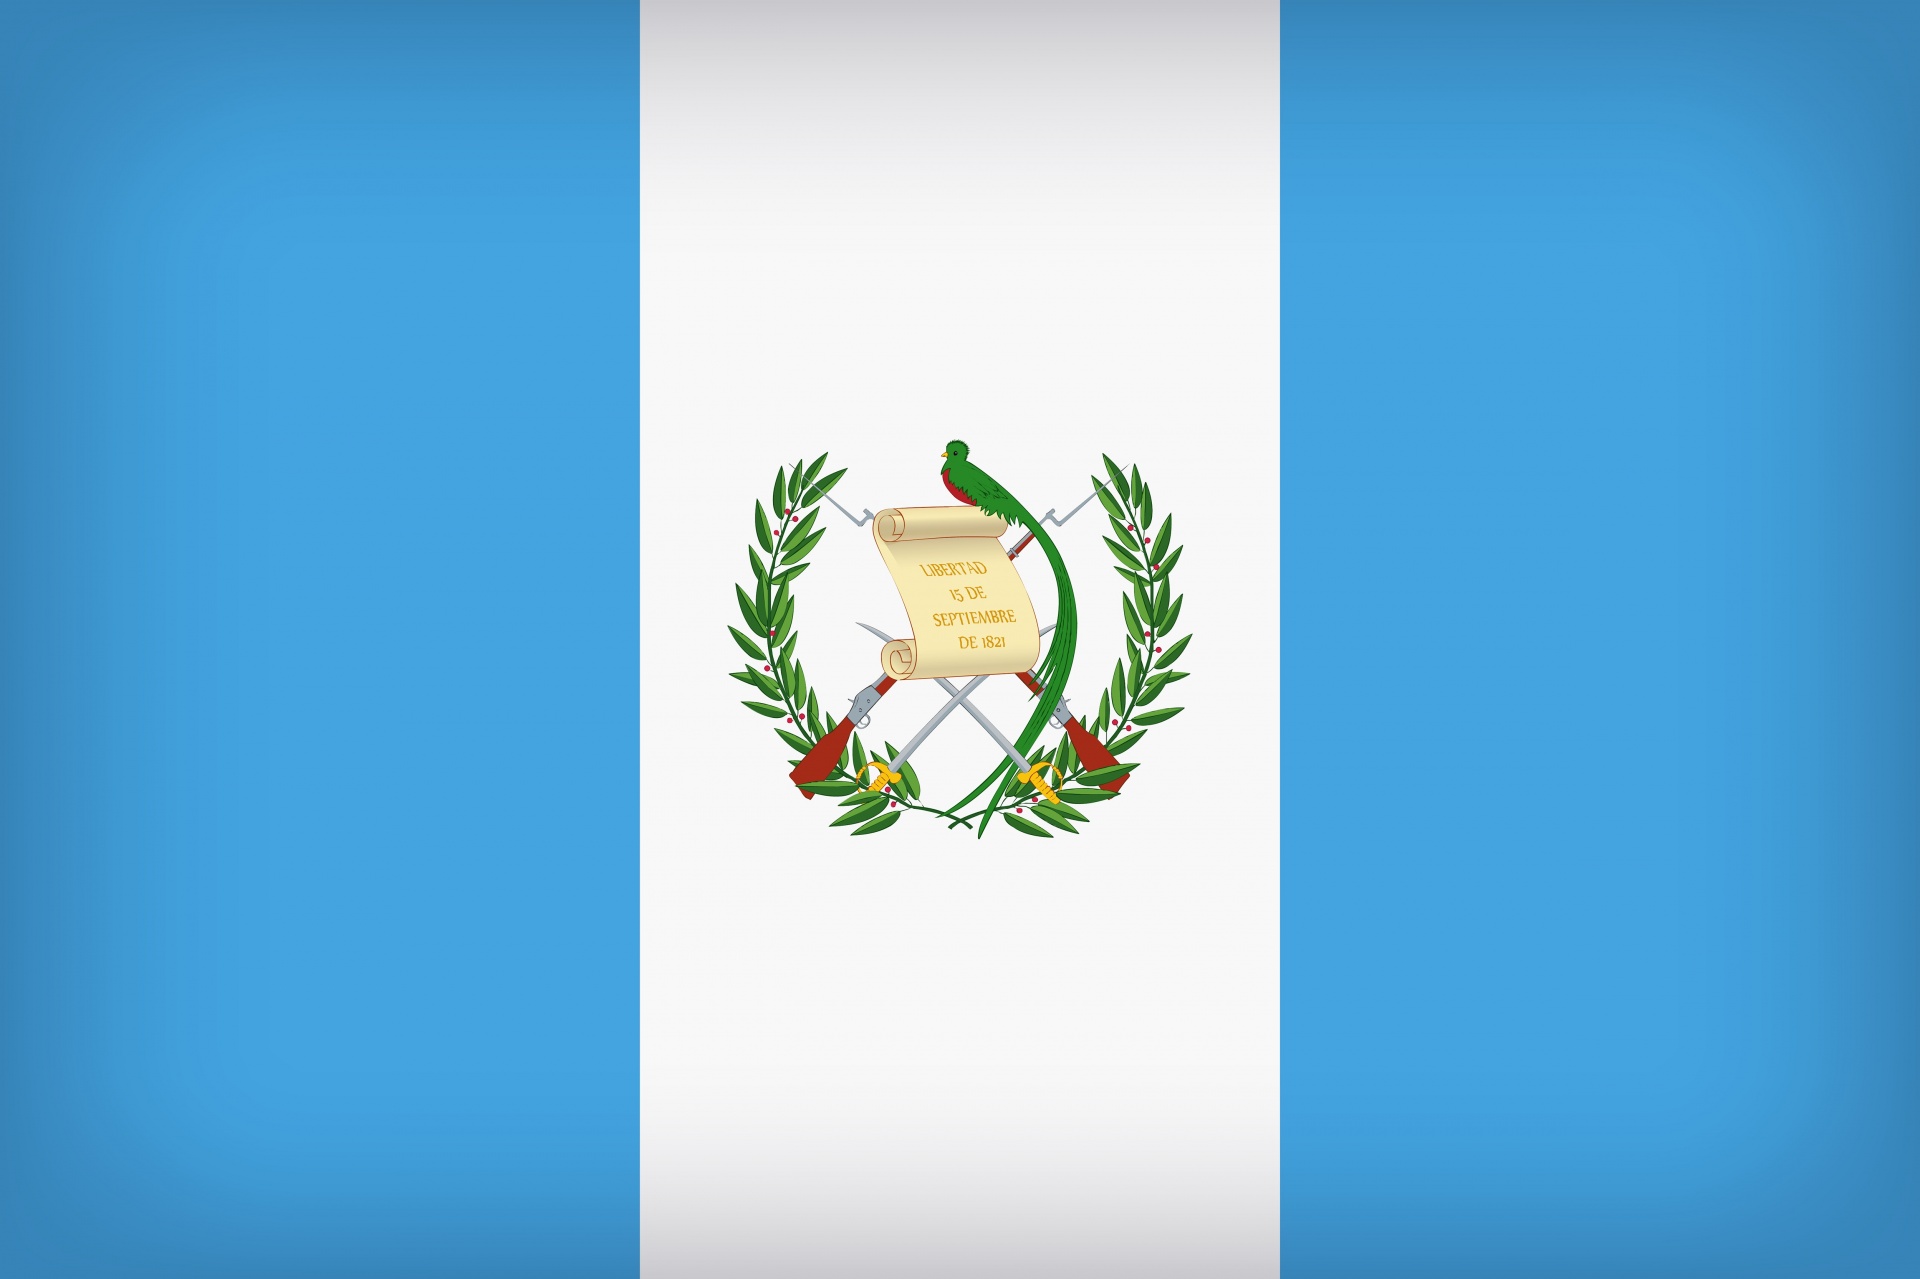 Vėliava & Nbsp,  Gvatemaloje,  Vėliava,  Fonas,  Fonas,  Gvatemala,  Šalis,  Simbolis,  Nacionalinis,  Ženklas